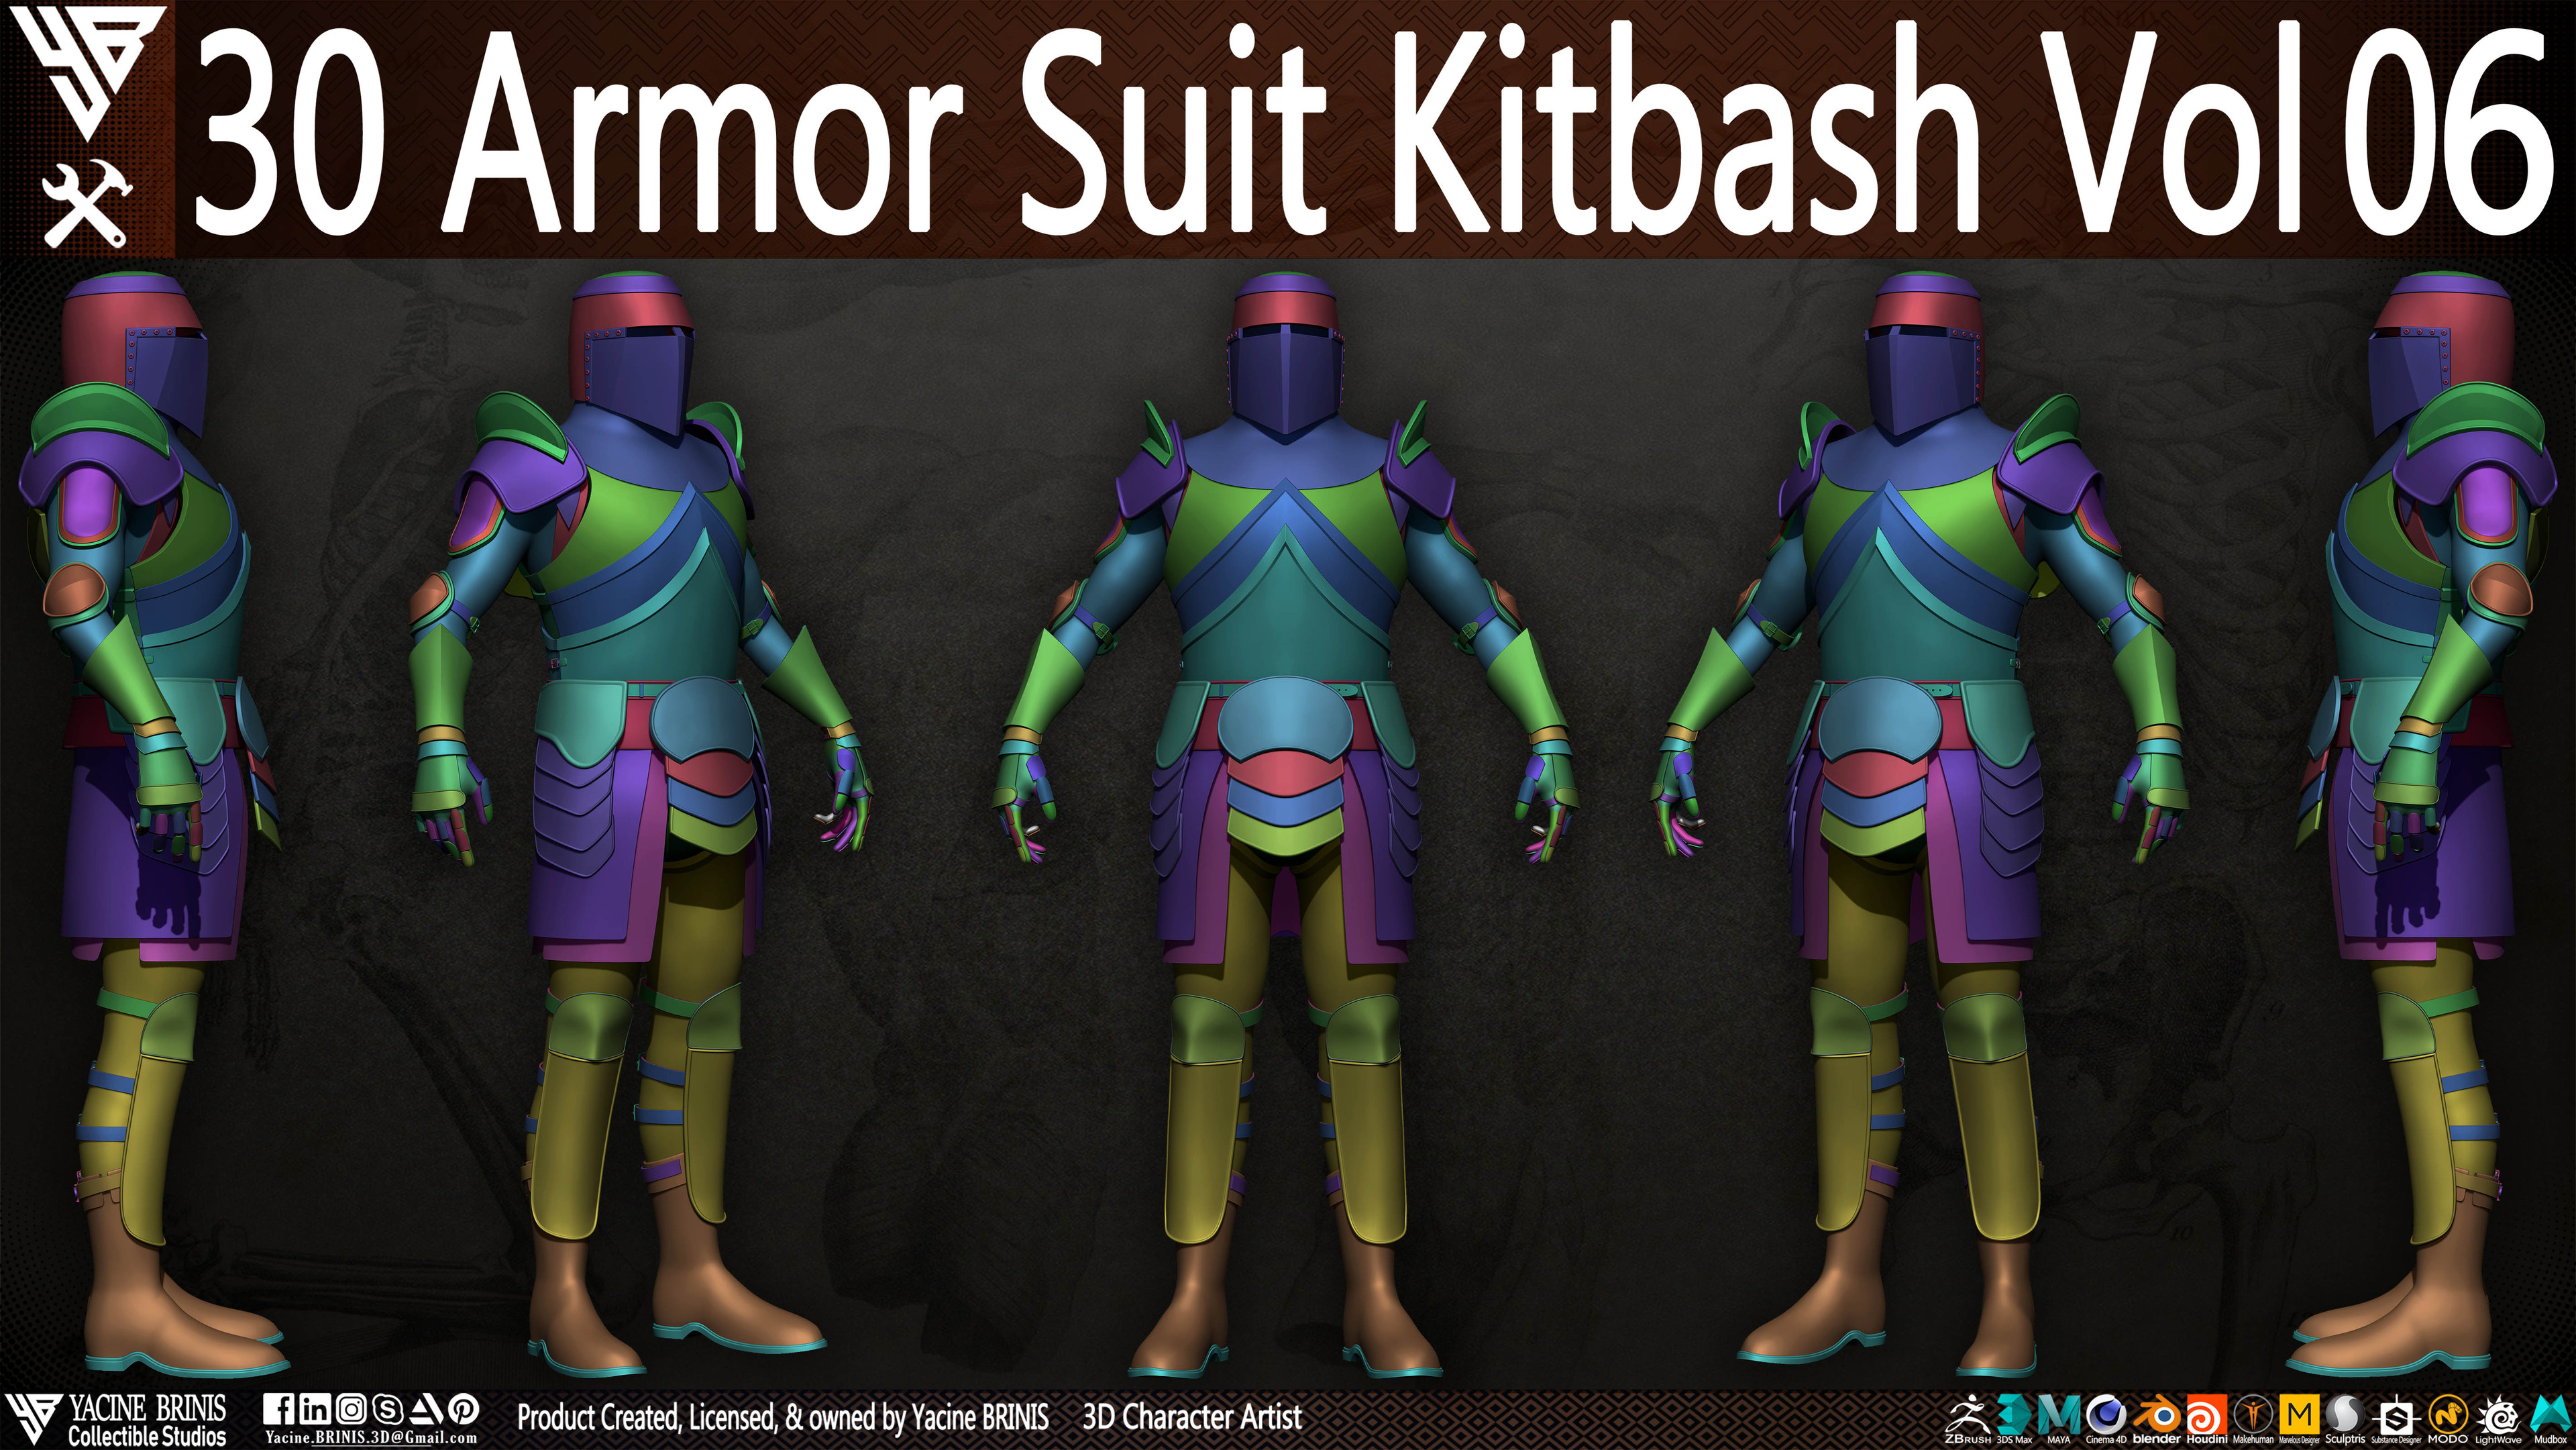 30 Armor Suit Kitbash By Yacine BRINIS Set 036